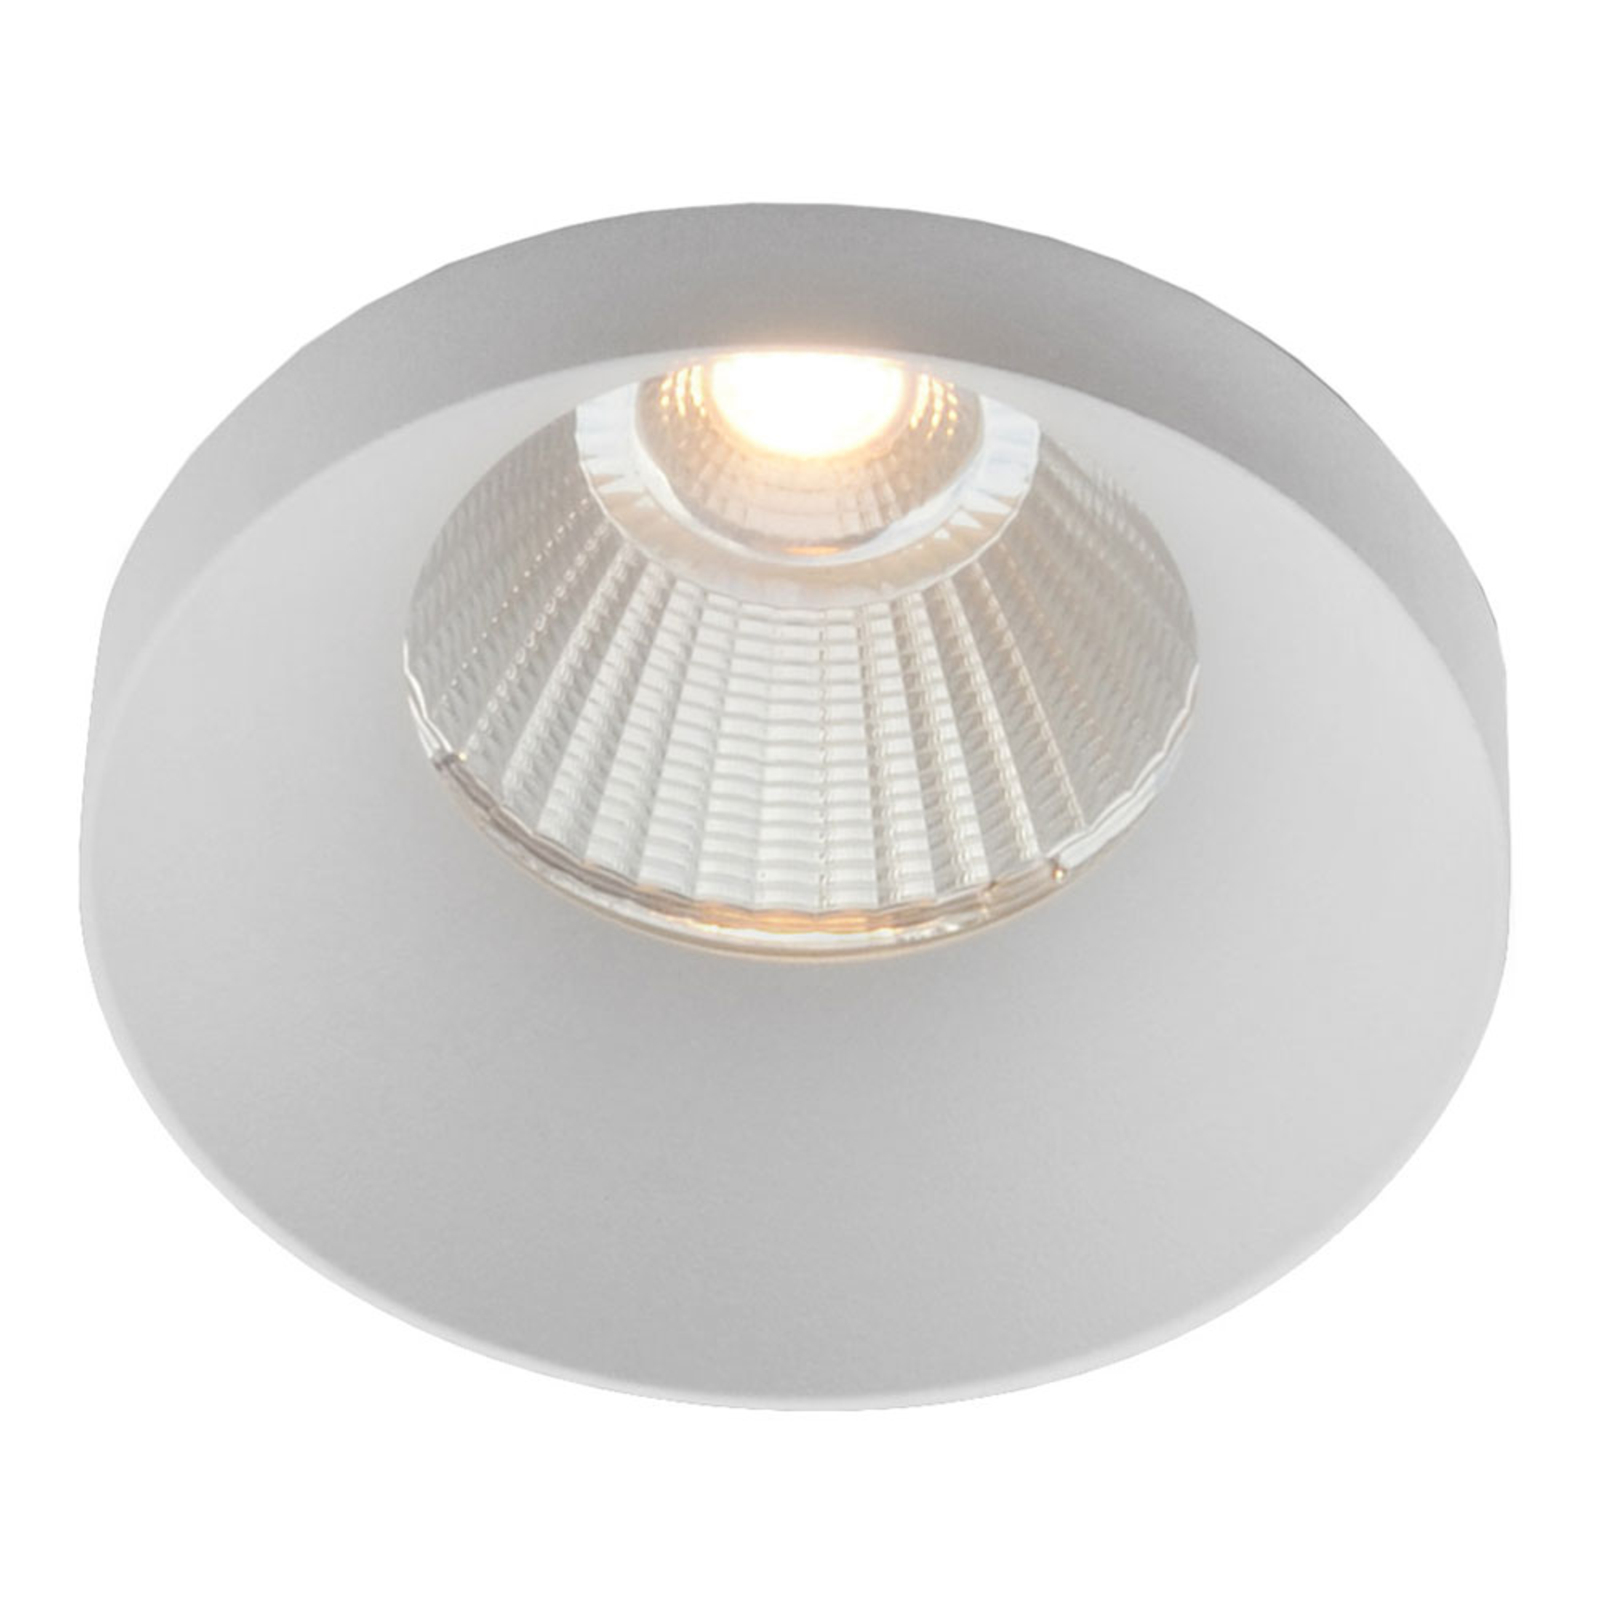 GF design Owi lampe encastrée IP54 blanche 3 000 K